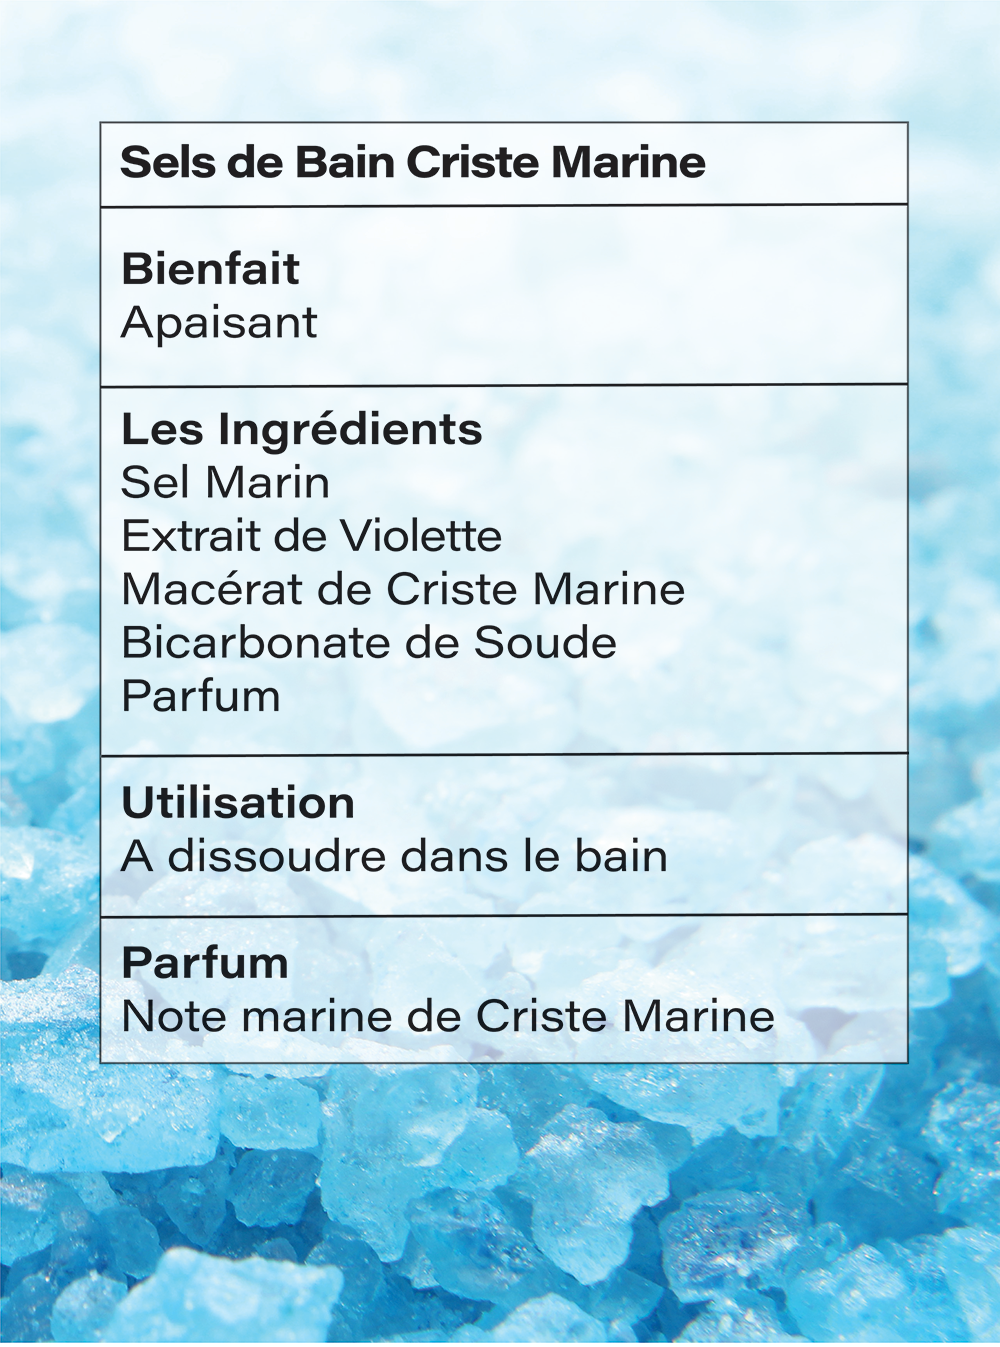 Les qualités des différents sels marins pour la santé - Vision Times